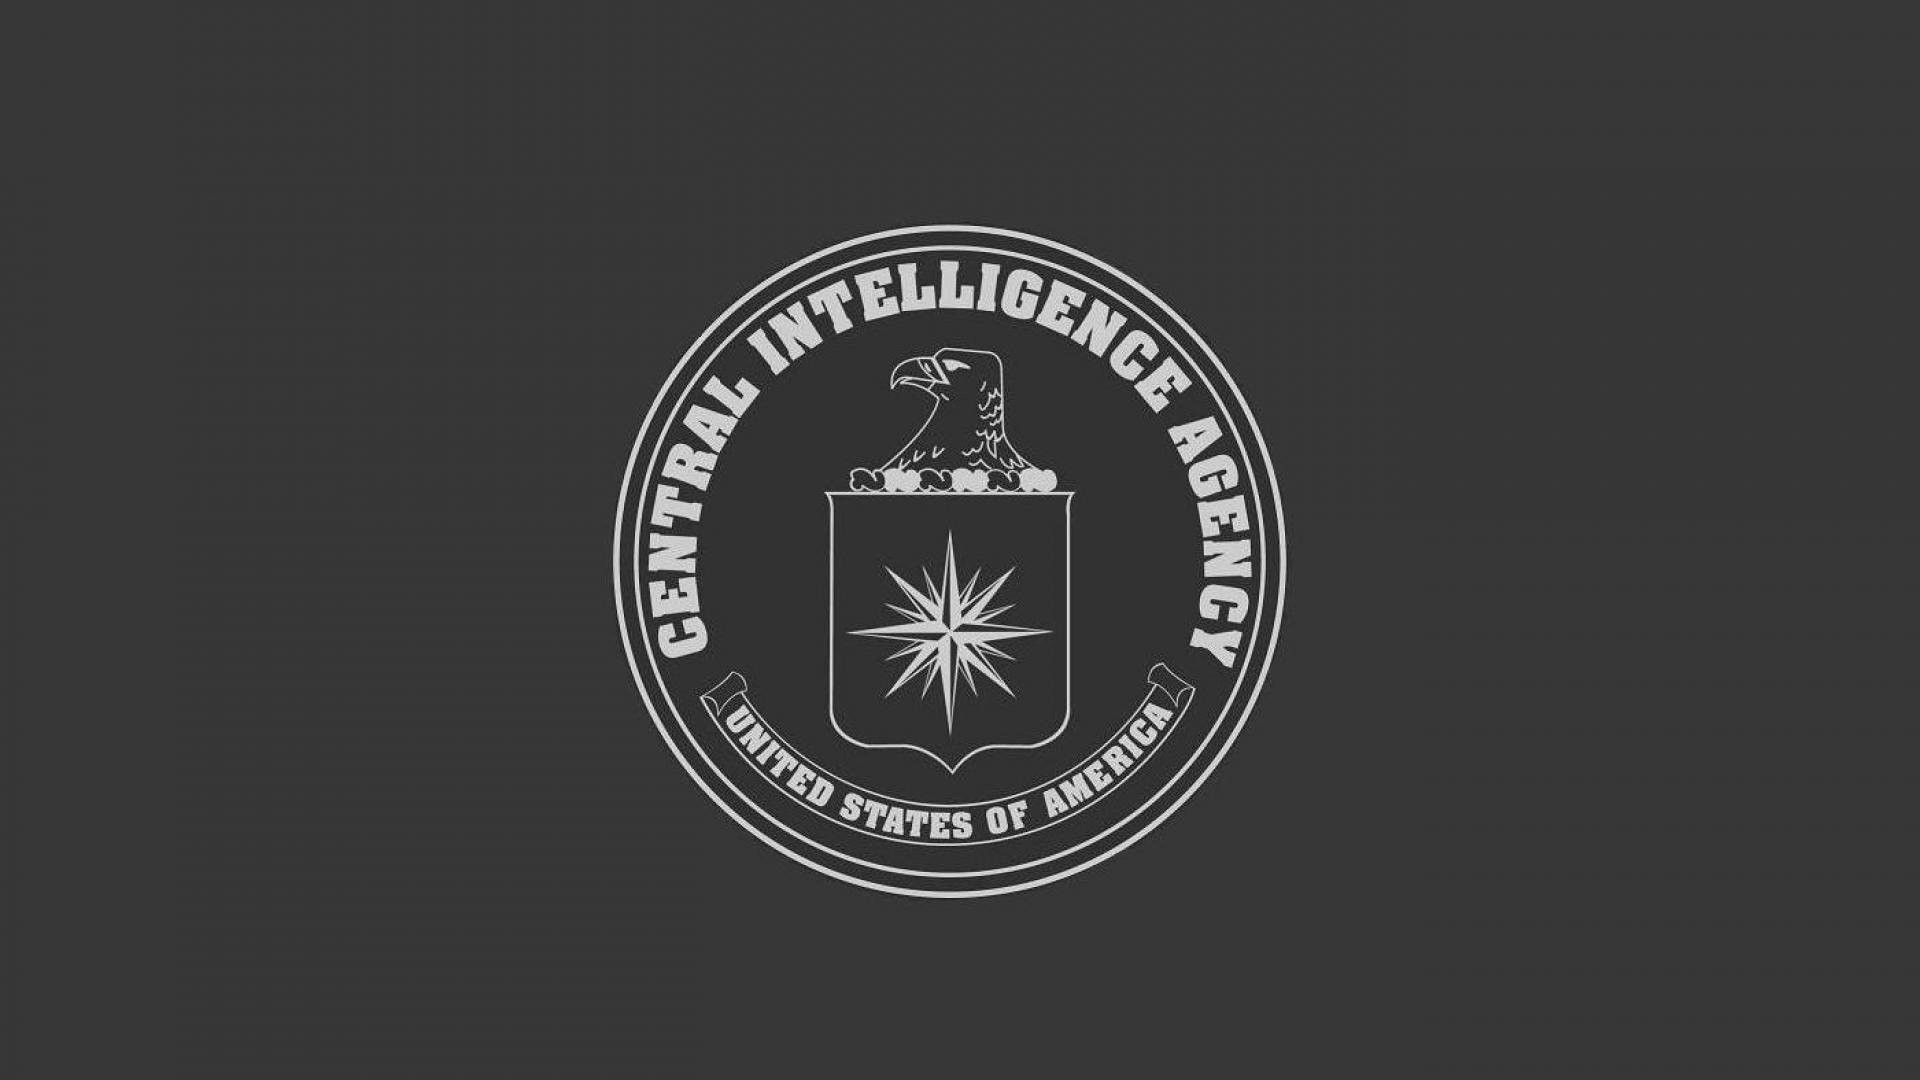 1920x1080 ... WallpaperSafari CIA Logo Wallpaper - WallpaperSafari ...